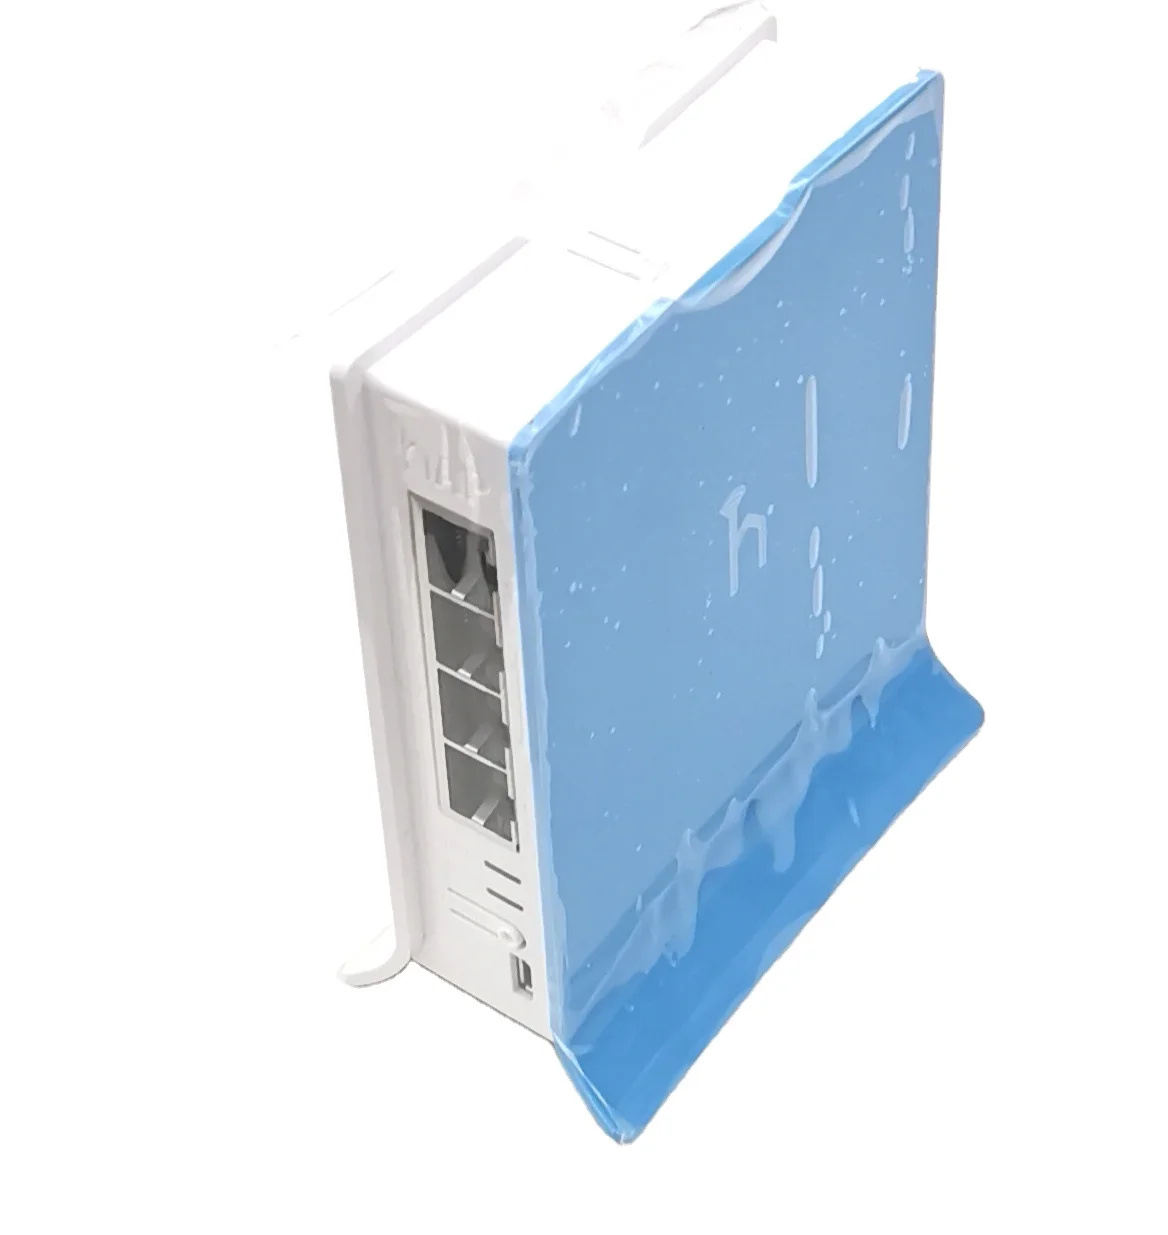 

MikroTik RB941-2nD-TC hAP Lite RouterOS Mini Home Wireless Router ROS, White